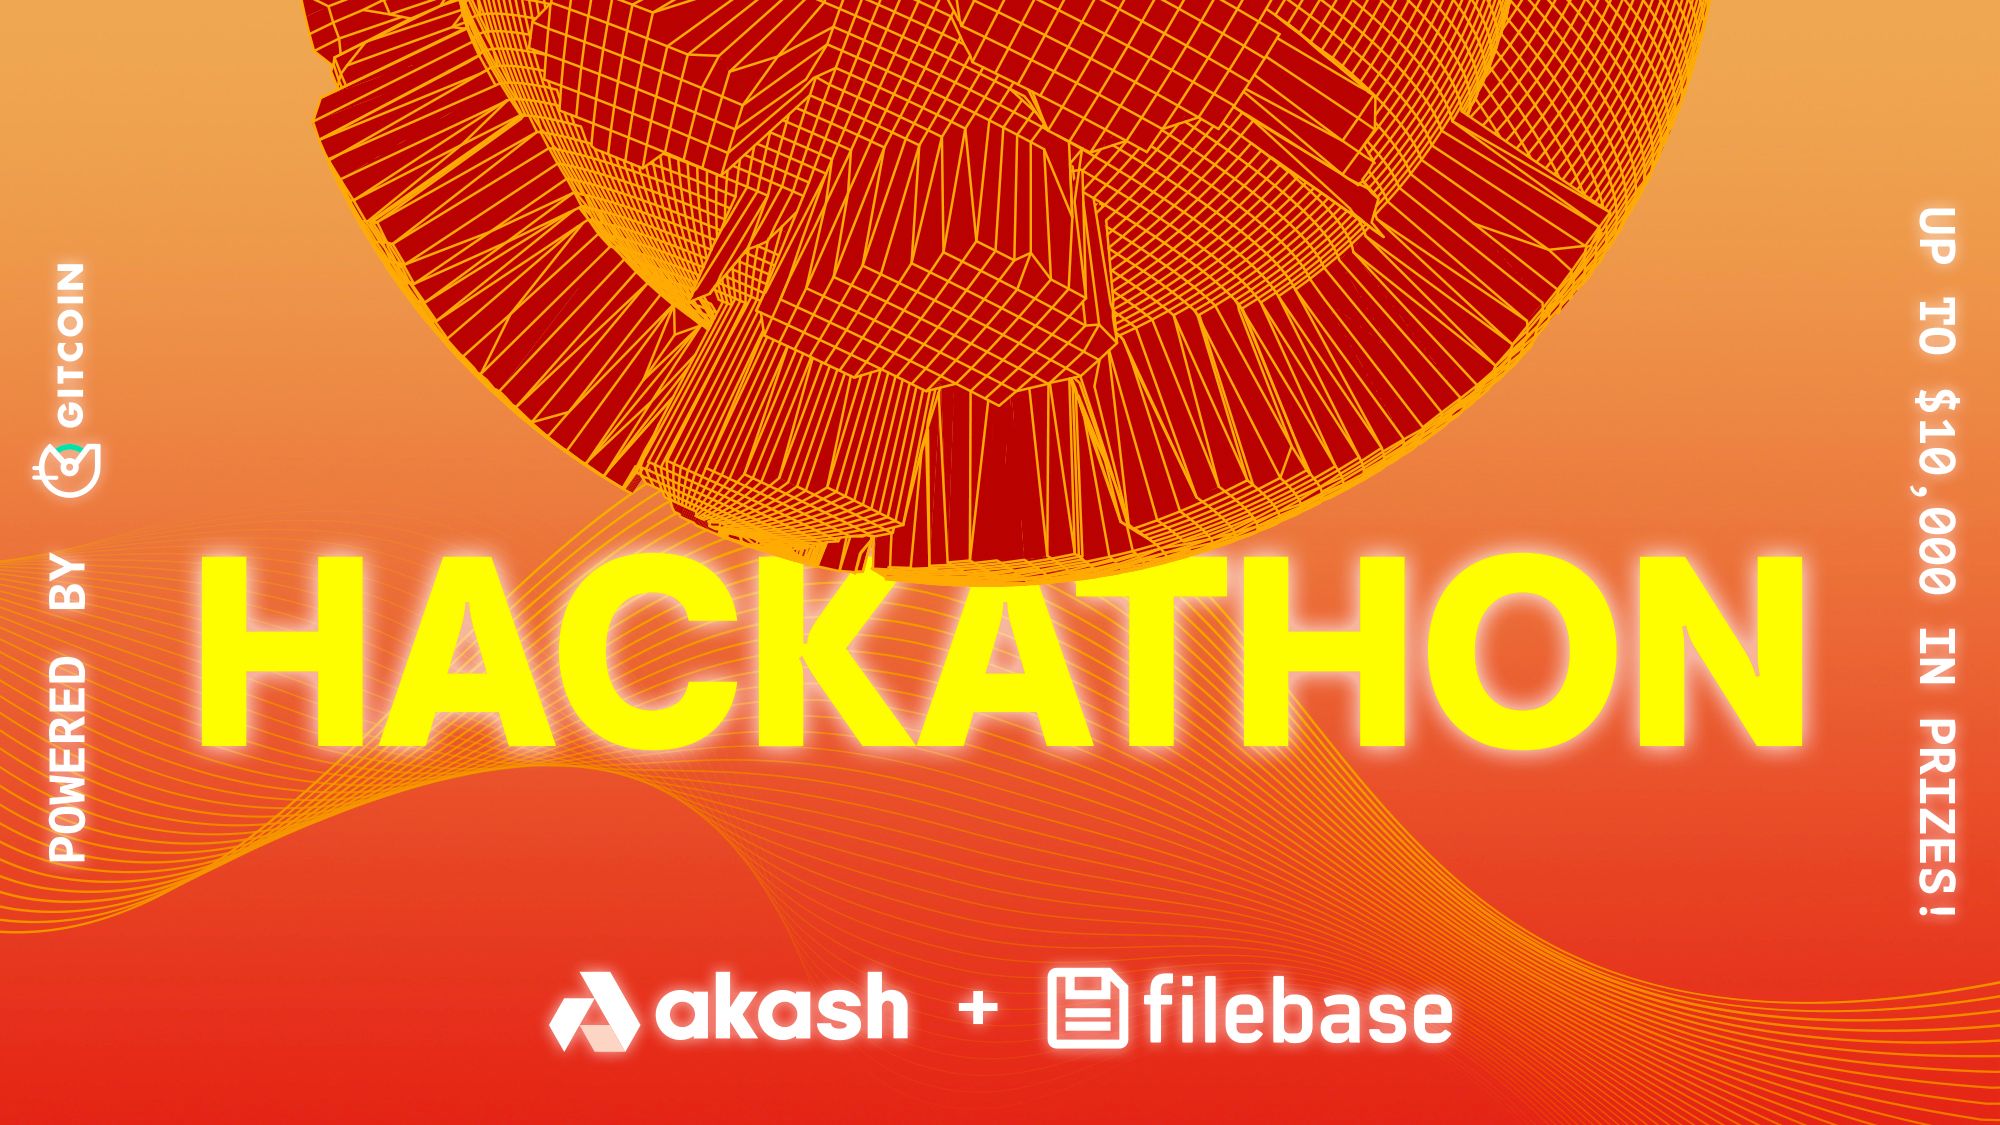 Filebase + Akash Hackathon